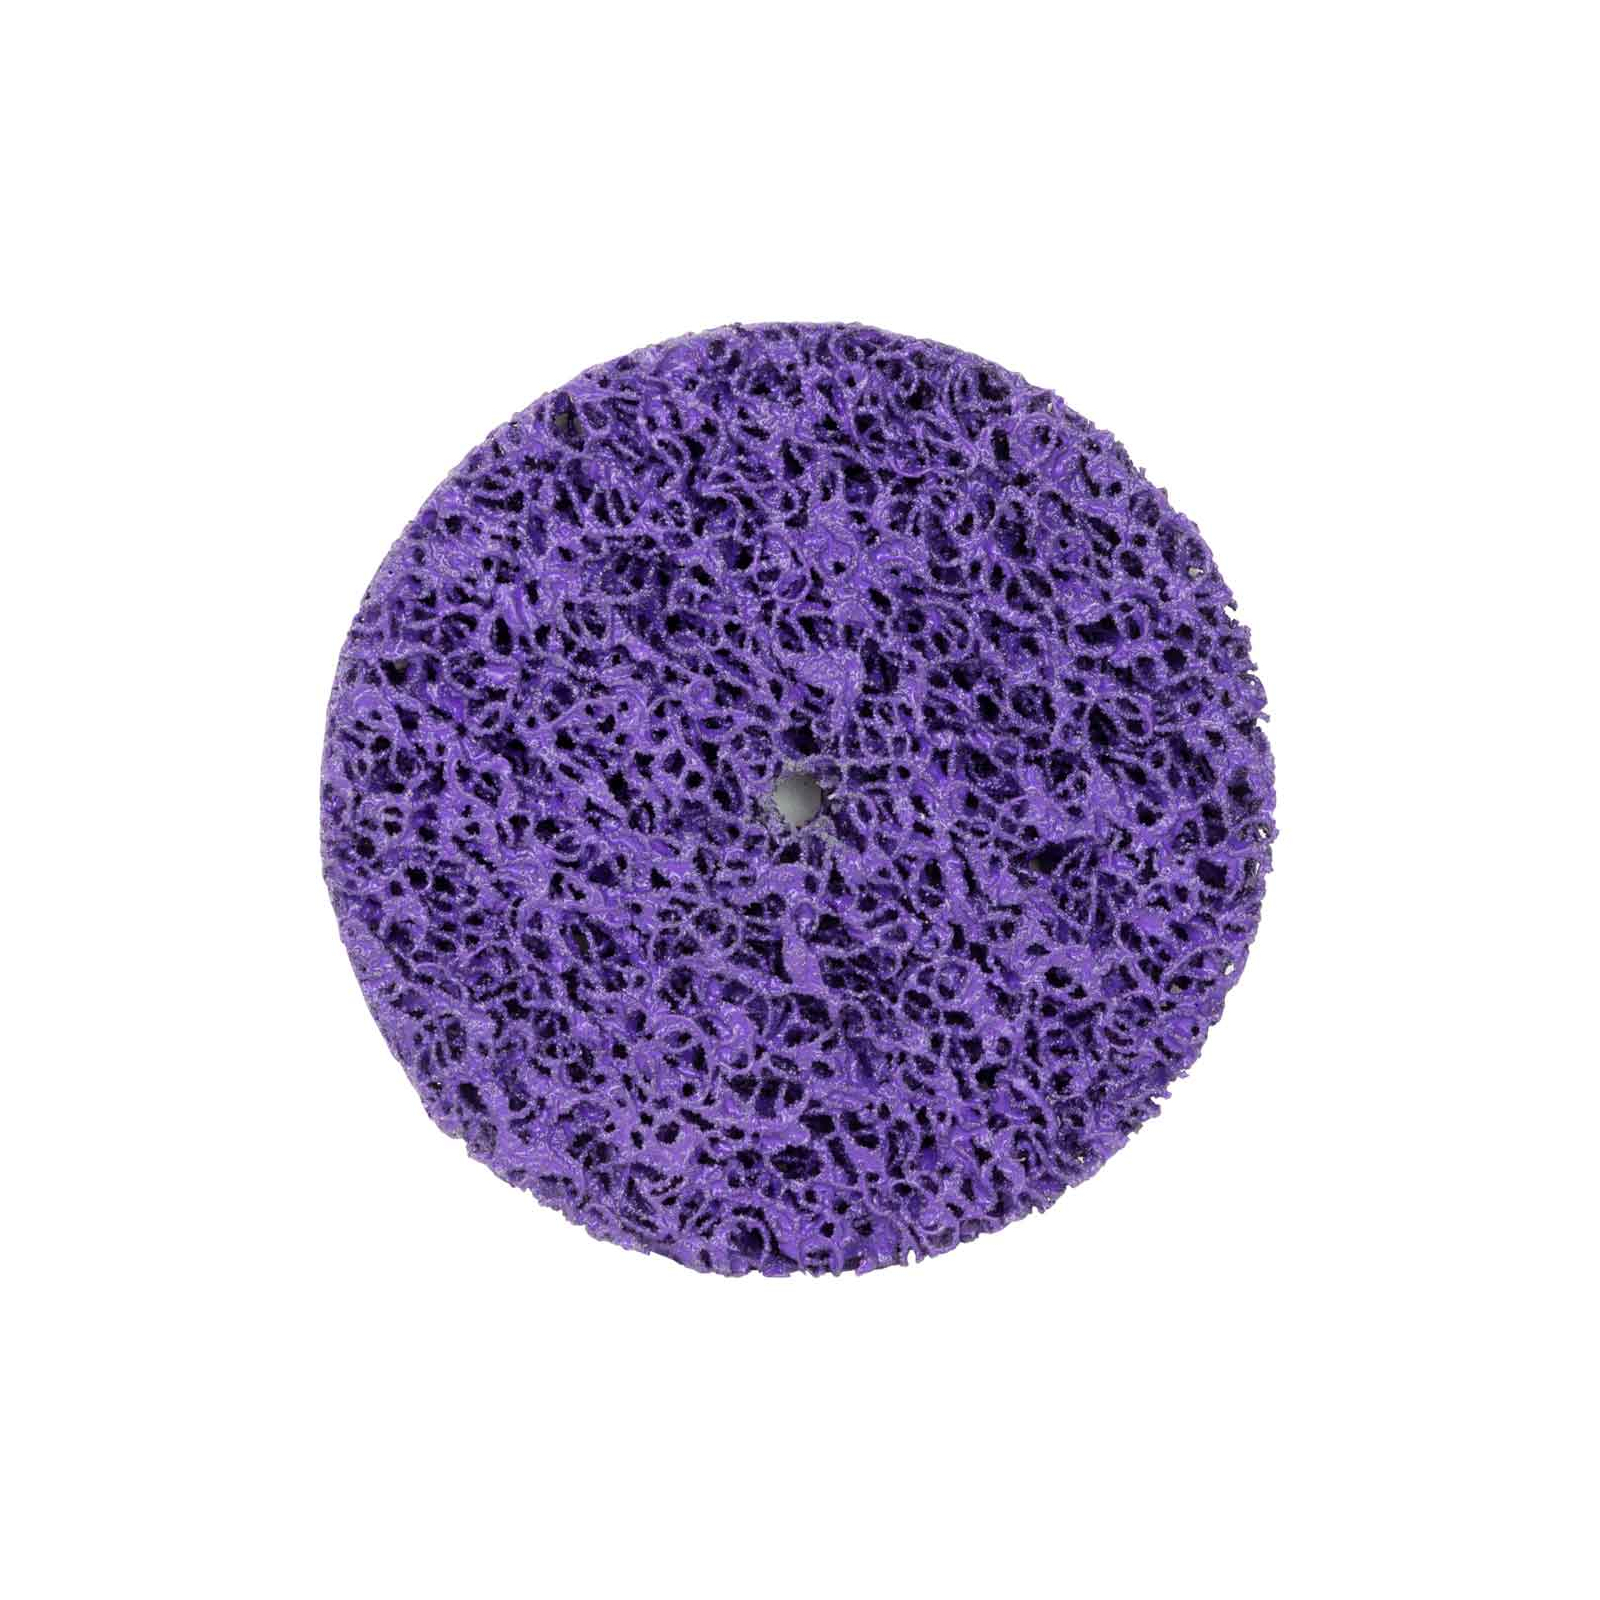 Круг зачистний Sigma з нетканого абразиву (корал) 125мм без тримача фіолетовий твердий (9175681)